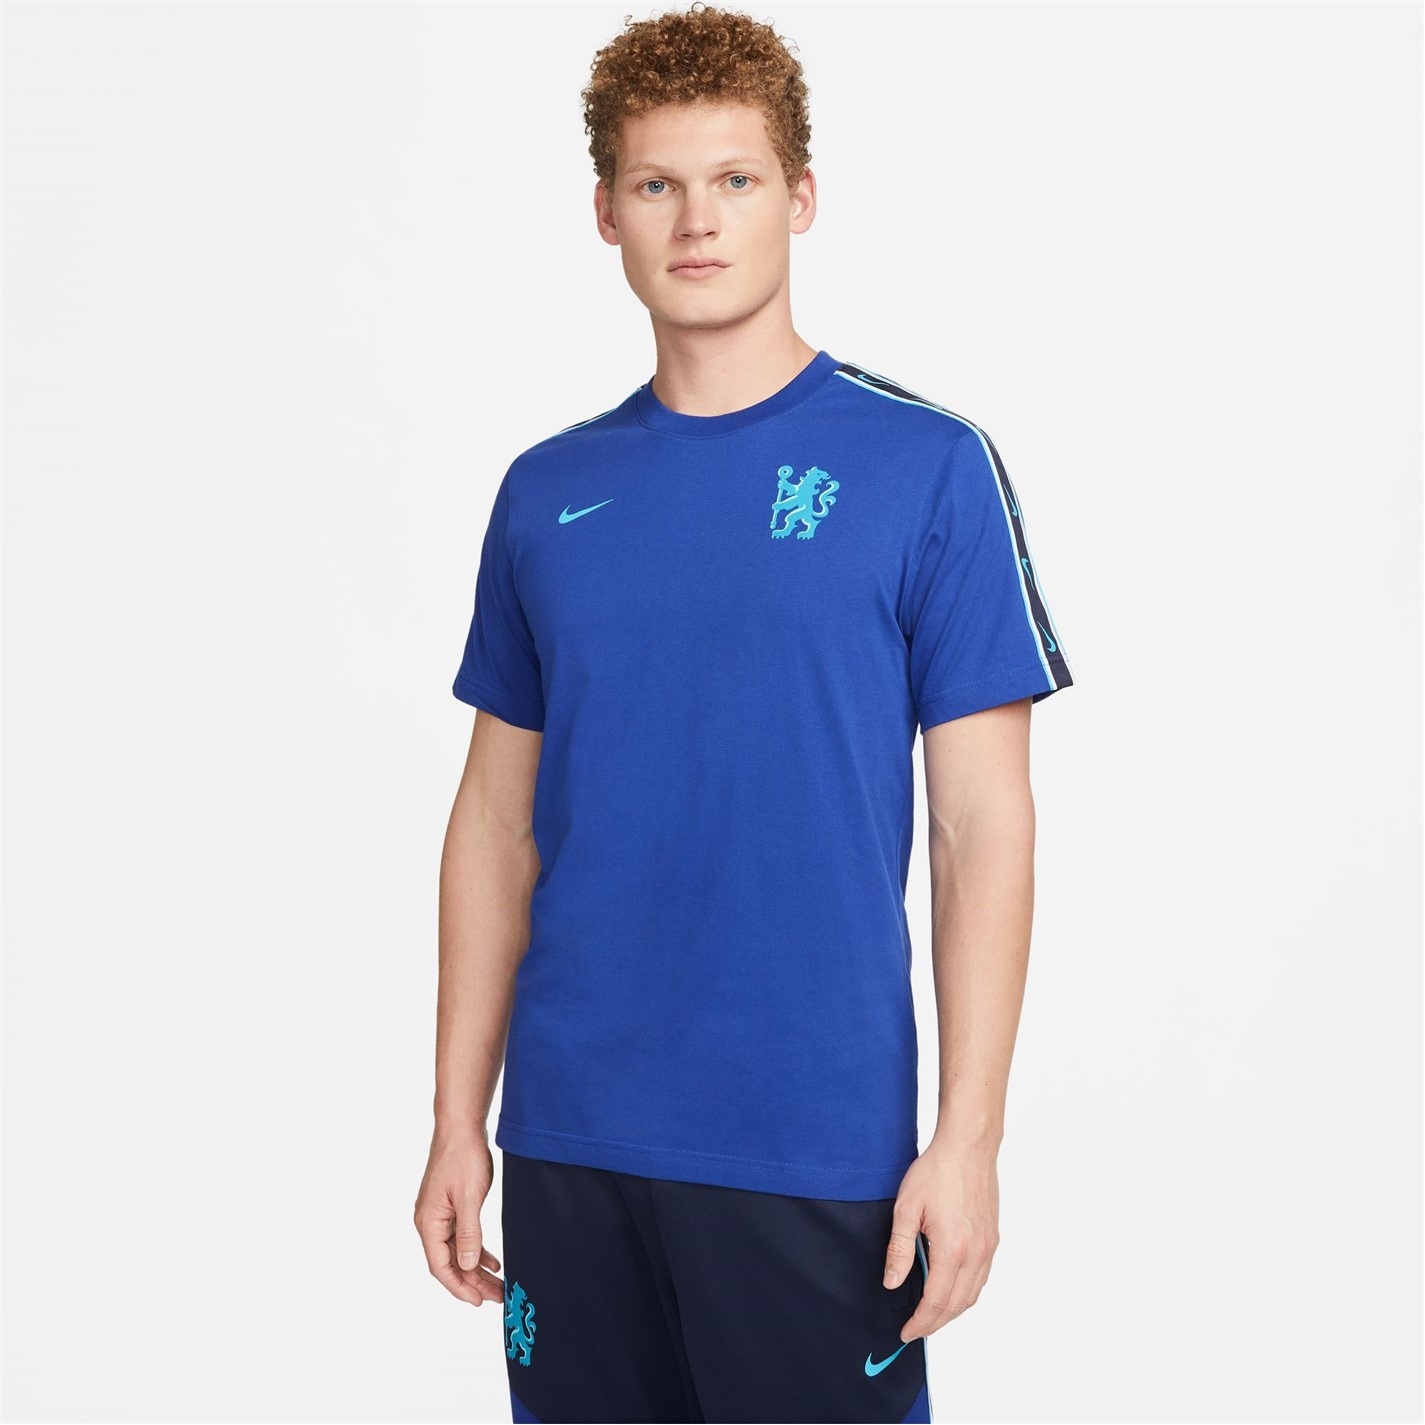 Tricou Nike Chelsea Repeat pentru Barbati rush albastru